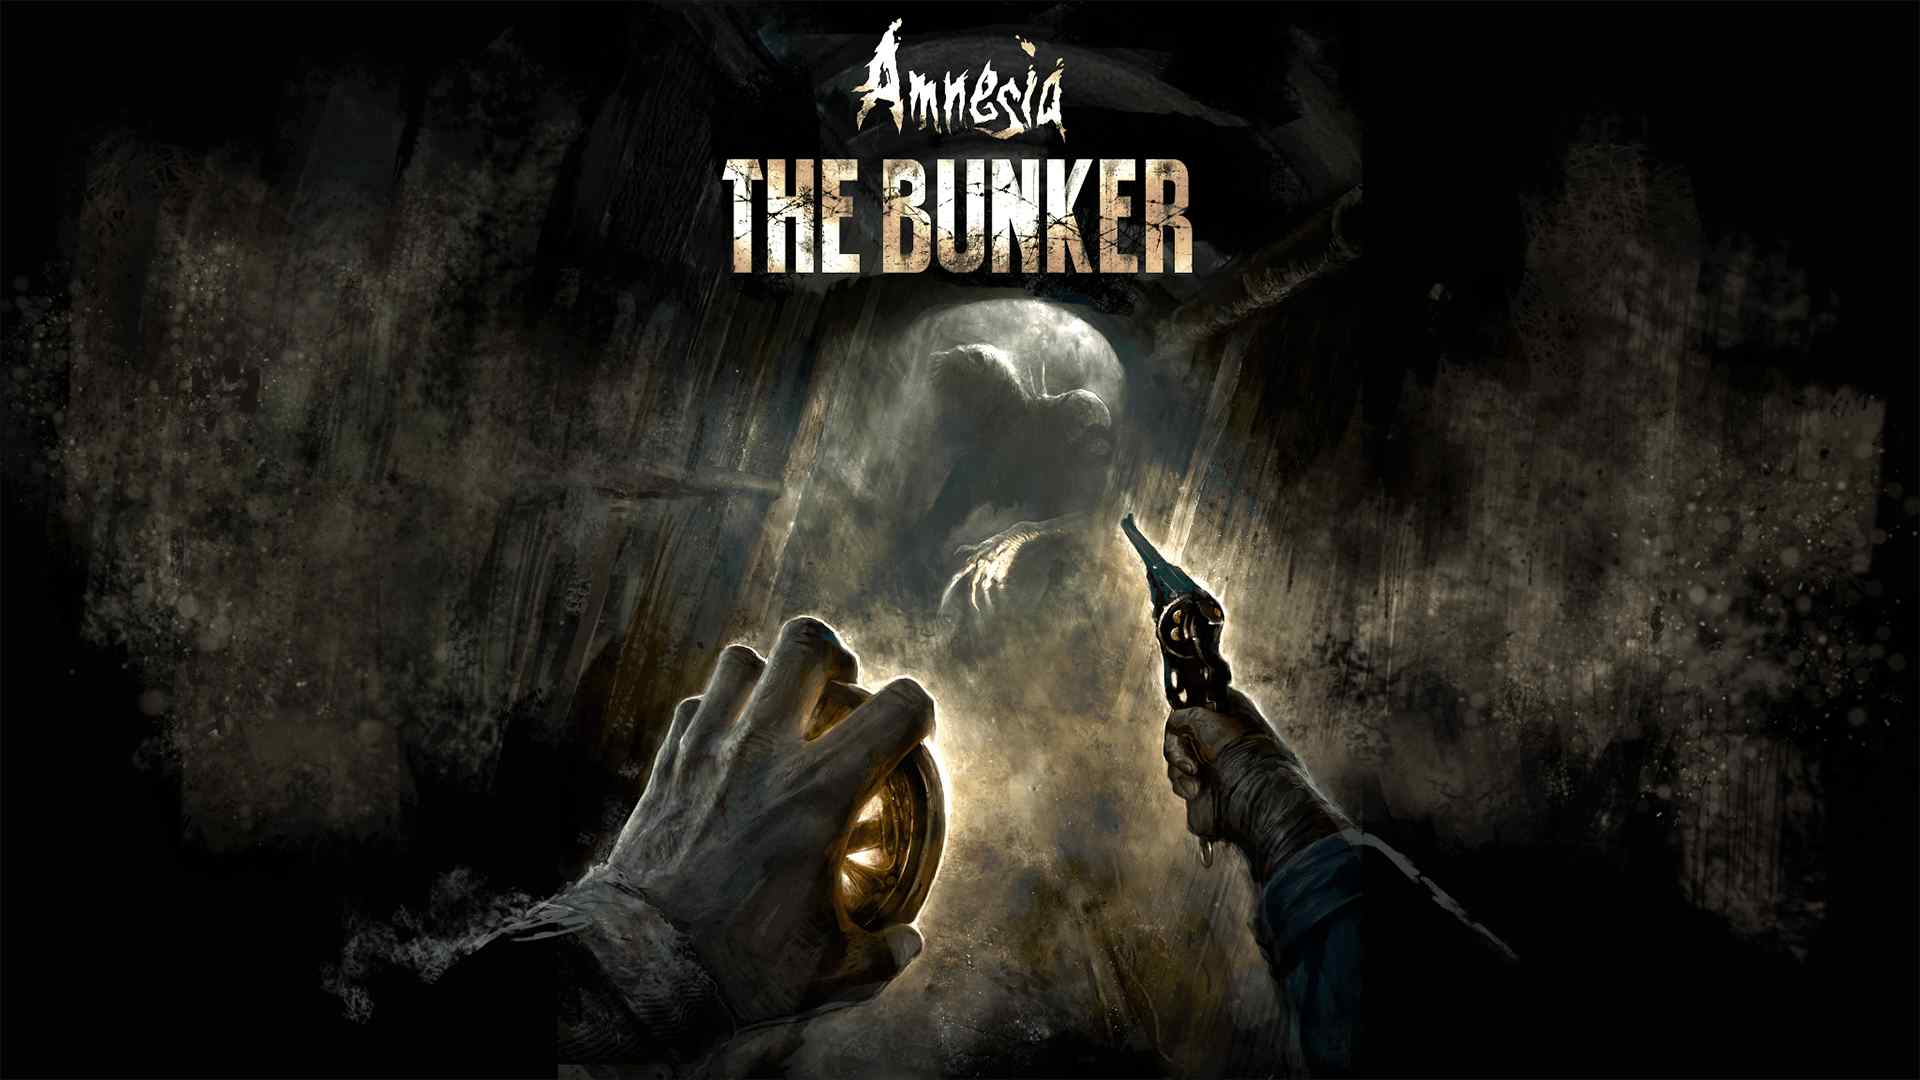 Twórcy gry Amnesia: The Bunker wypuścili nową aktualizację, która naprawia szereg błędów i usterek w grze